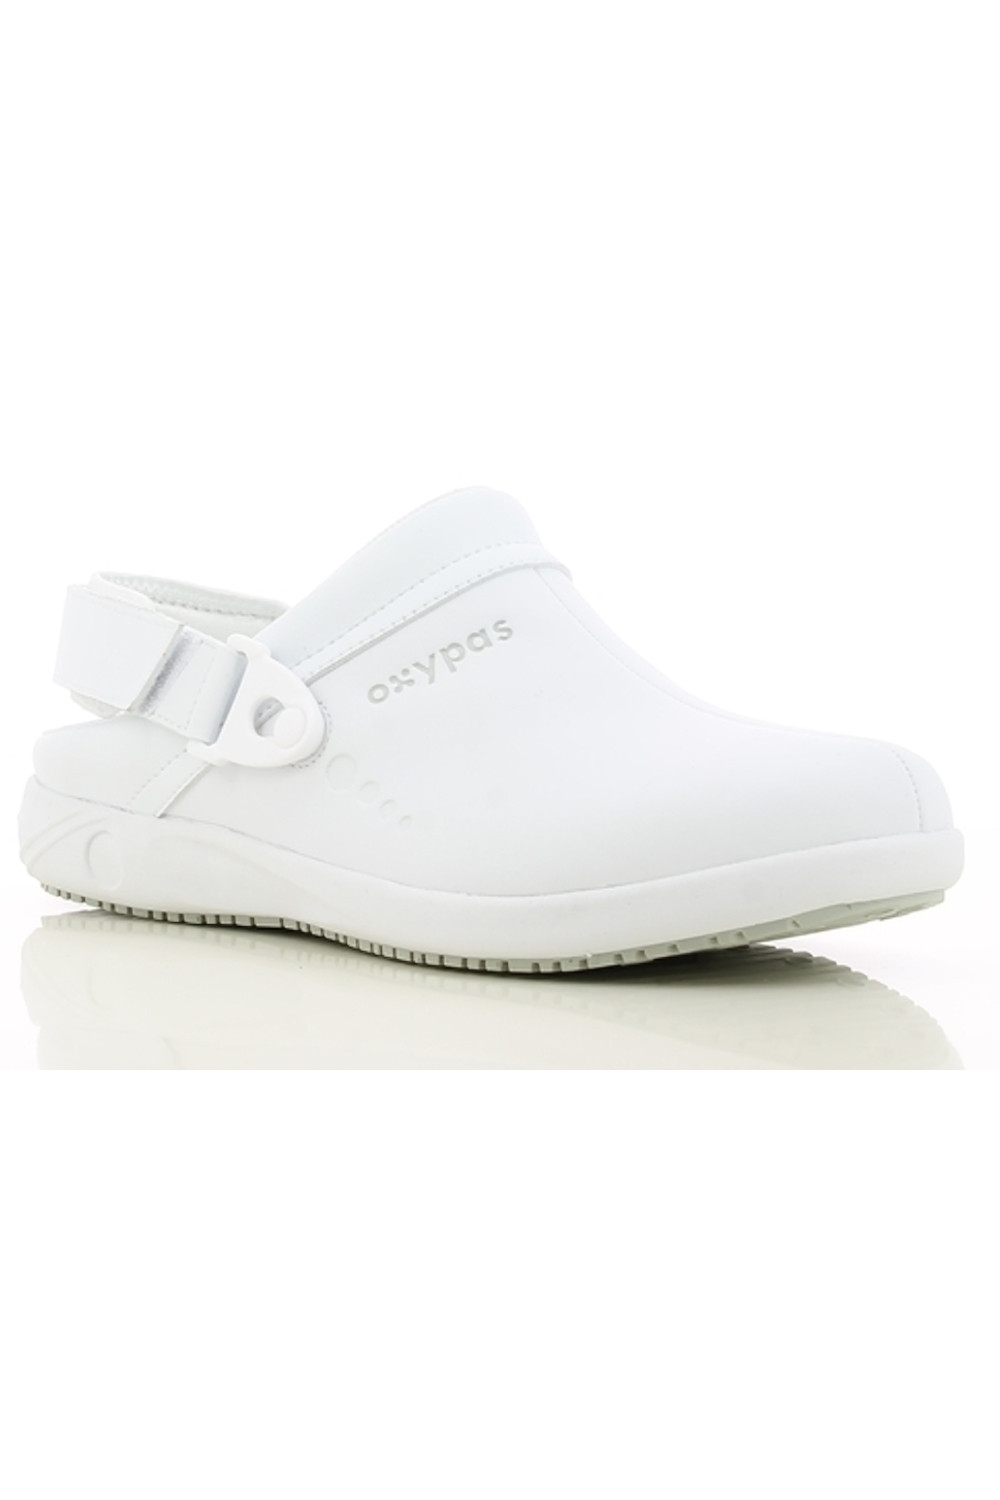 Buty męskie medyczne REMY obuwie biały